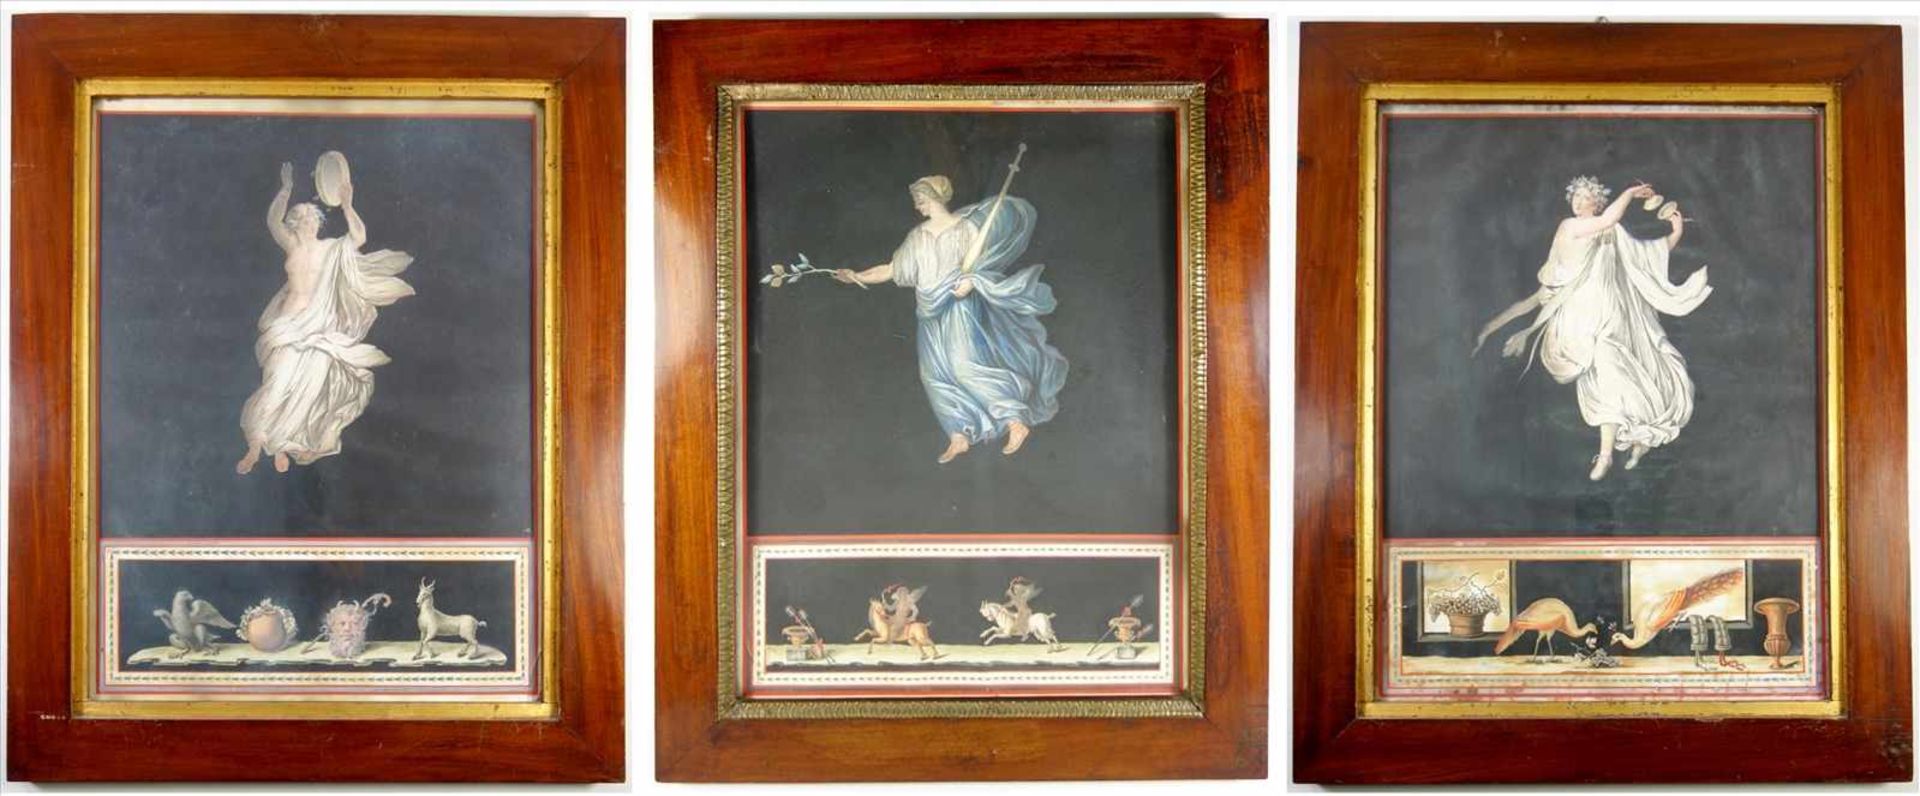 3 Gouachen nach Fresken aus der Villa des Cicero in Pompeji, um 1820, jeweils eine weibliche